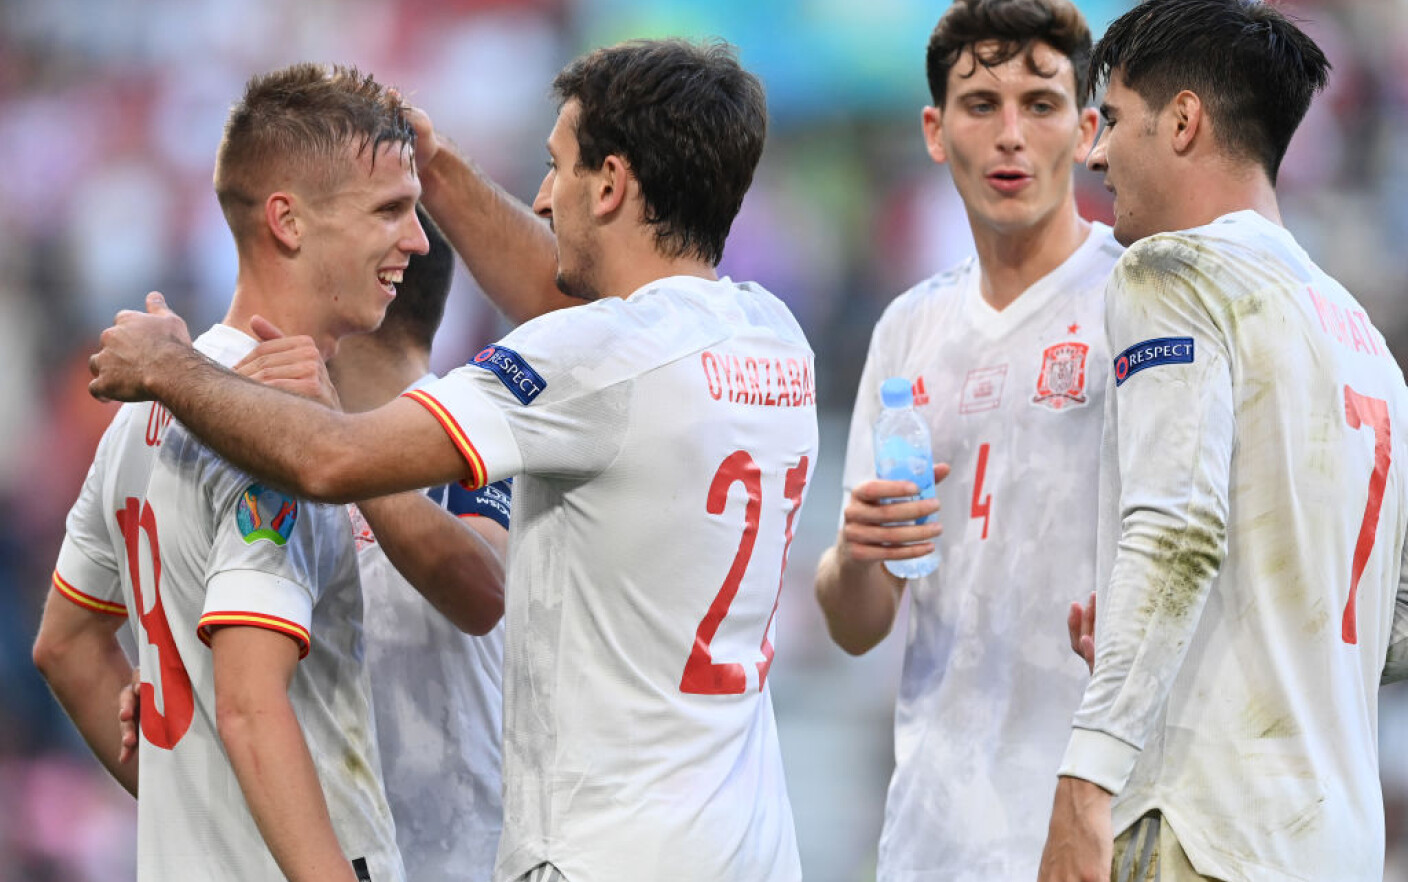 Amphibious impose Beak Croația - Spania, 3-5 la EURO 2020. Spaniolii merg în sferturi, după cel  mai nebun meci de la acest turneu - Stirileprotv.ro